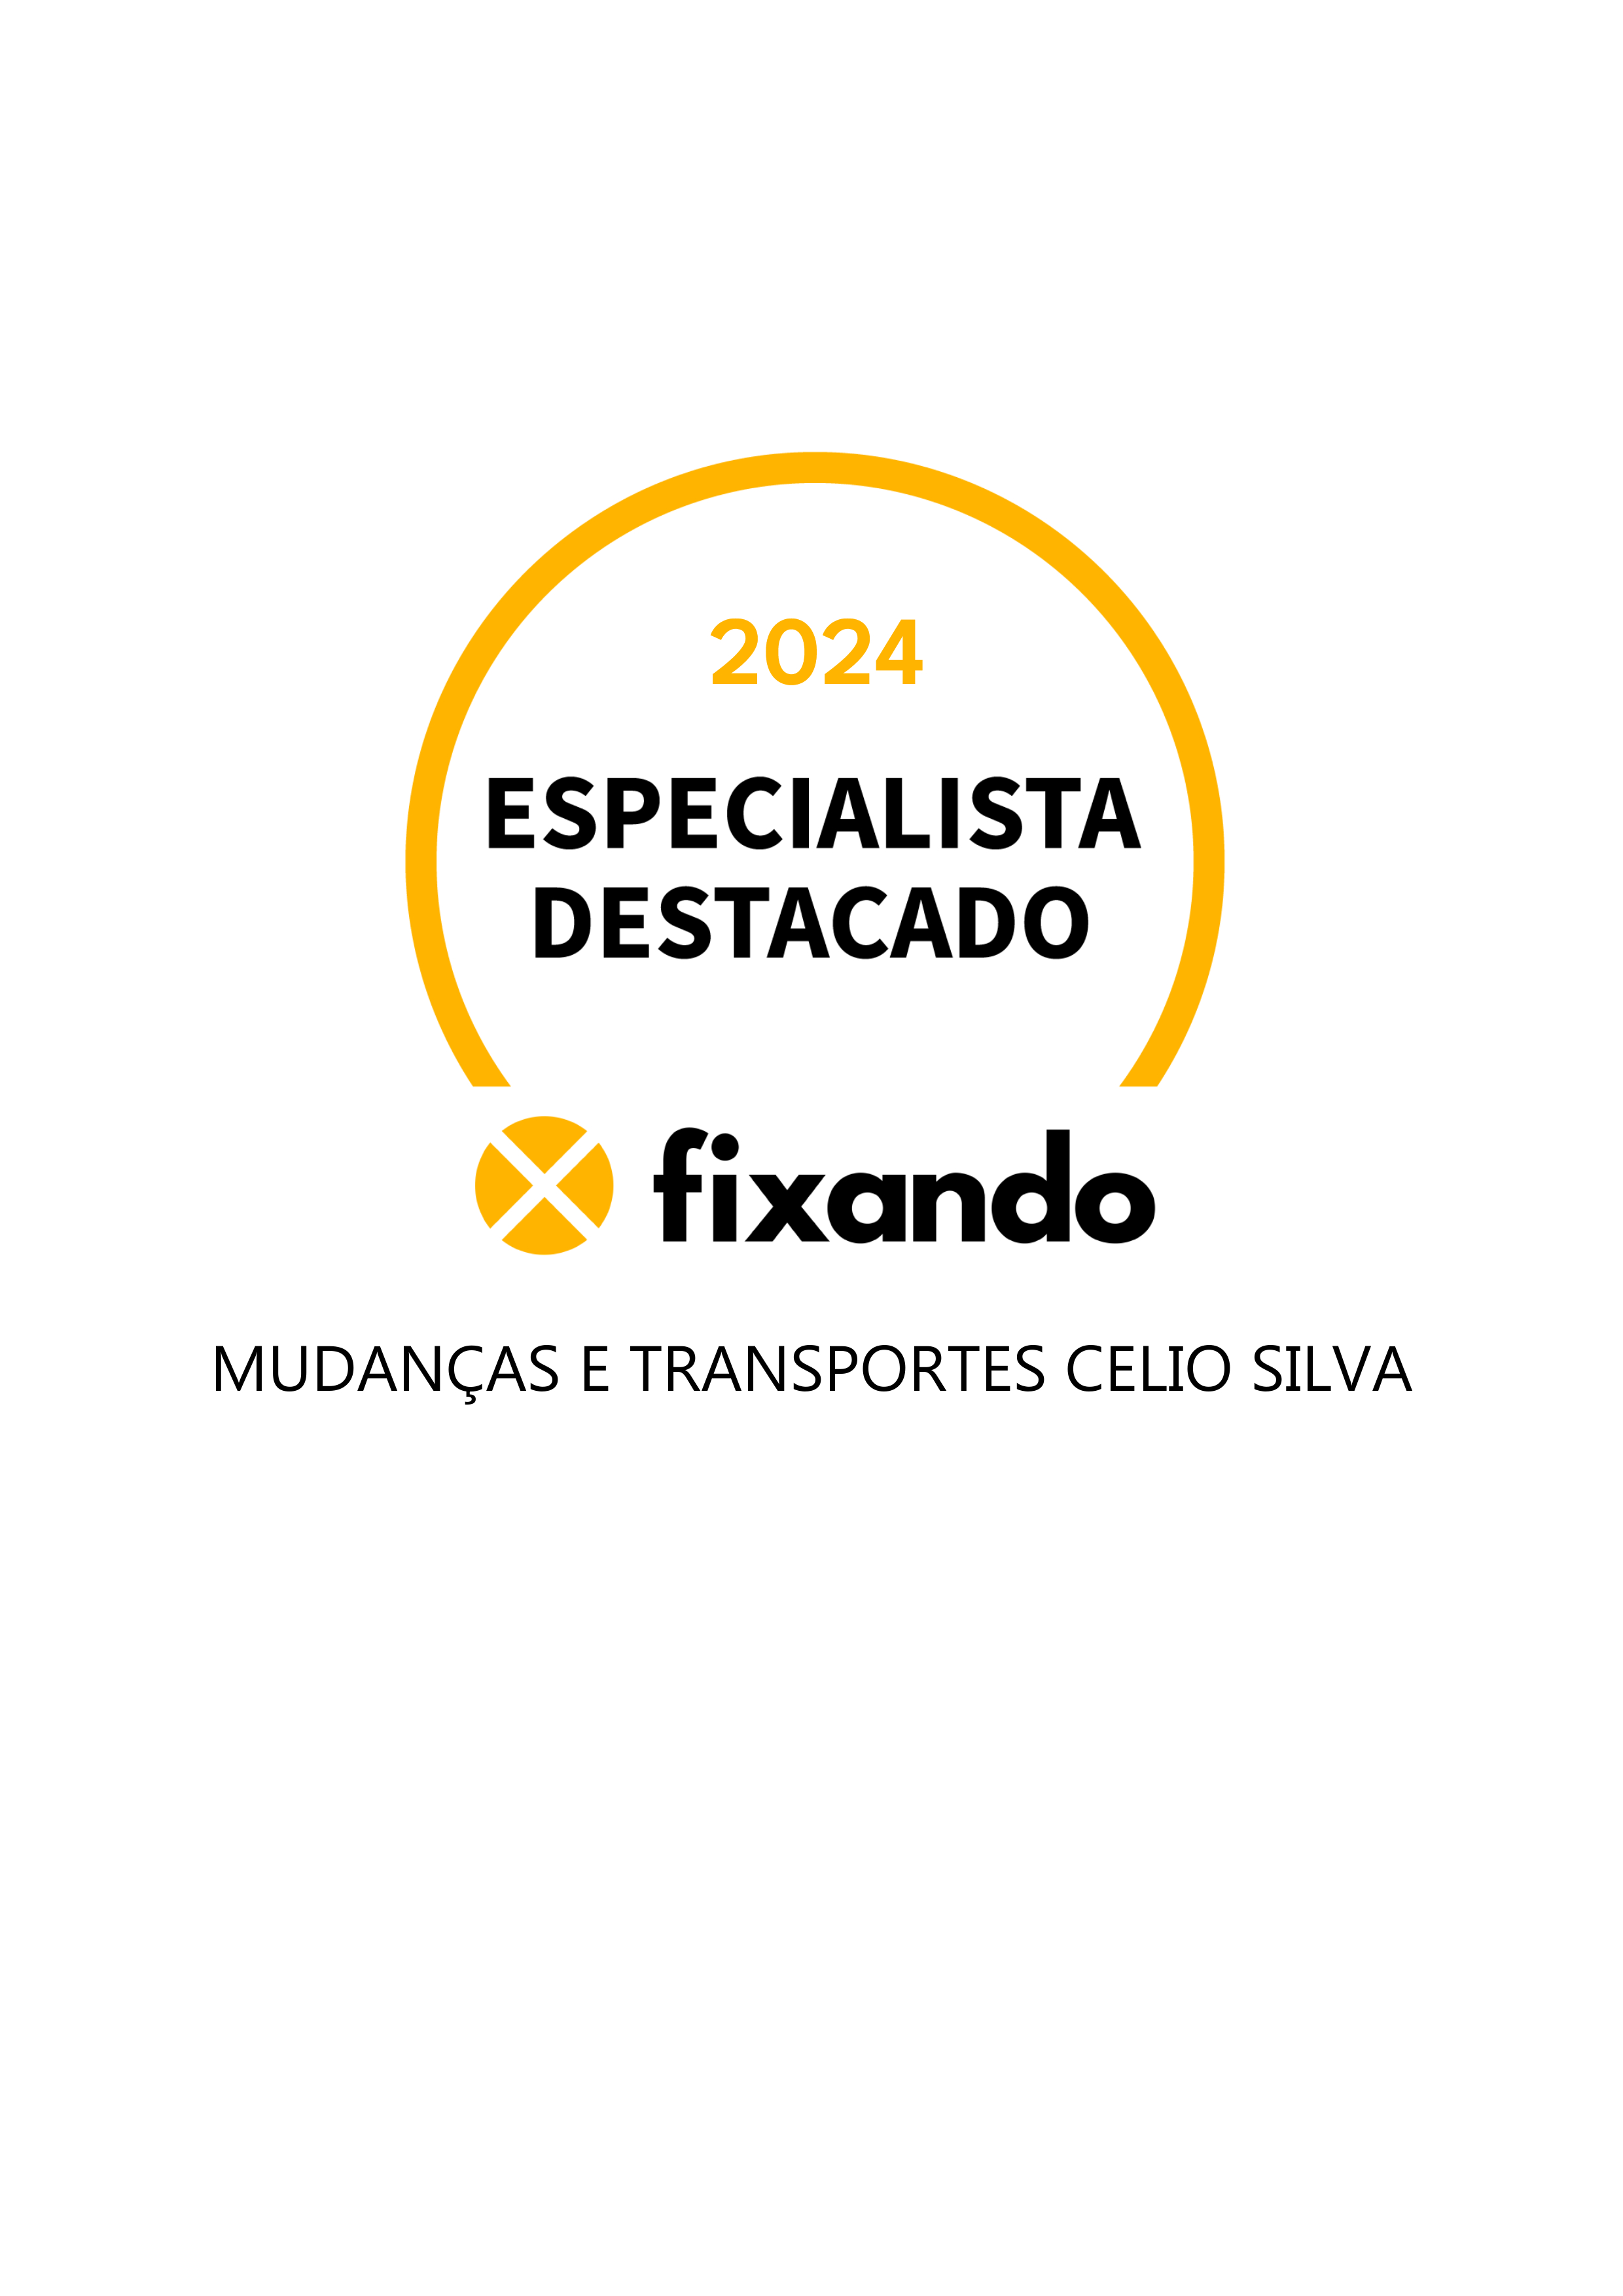 Mudanças e Transportes Celio Silva - Matosinhos - Mudança de Móveis e de Estruturas Pesadas